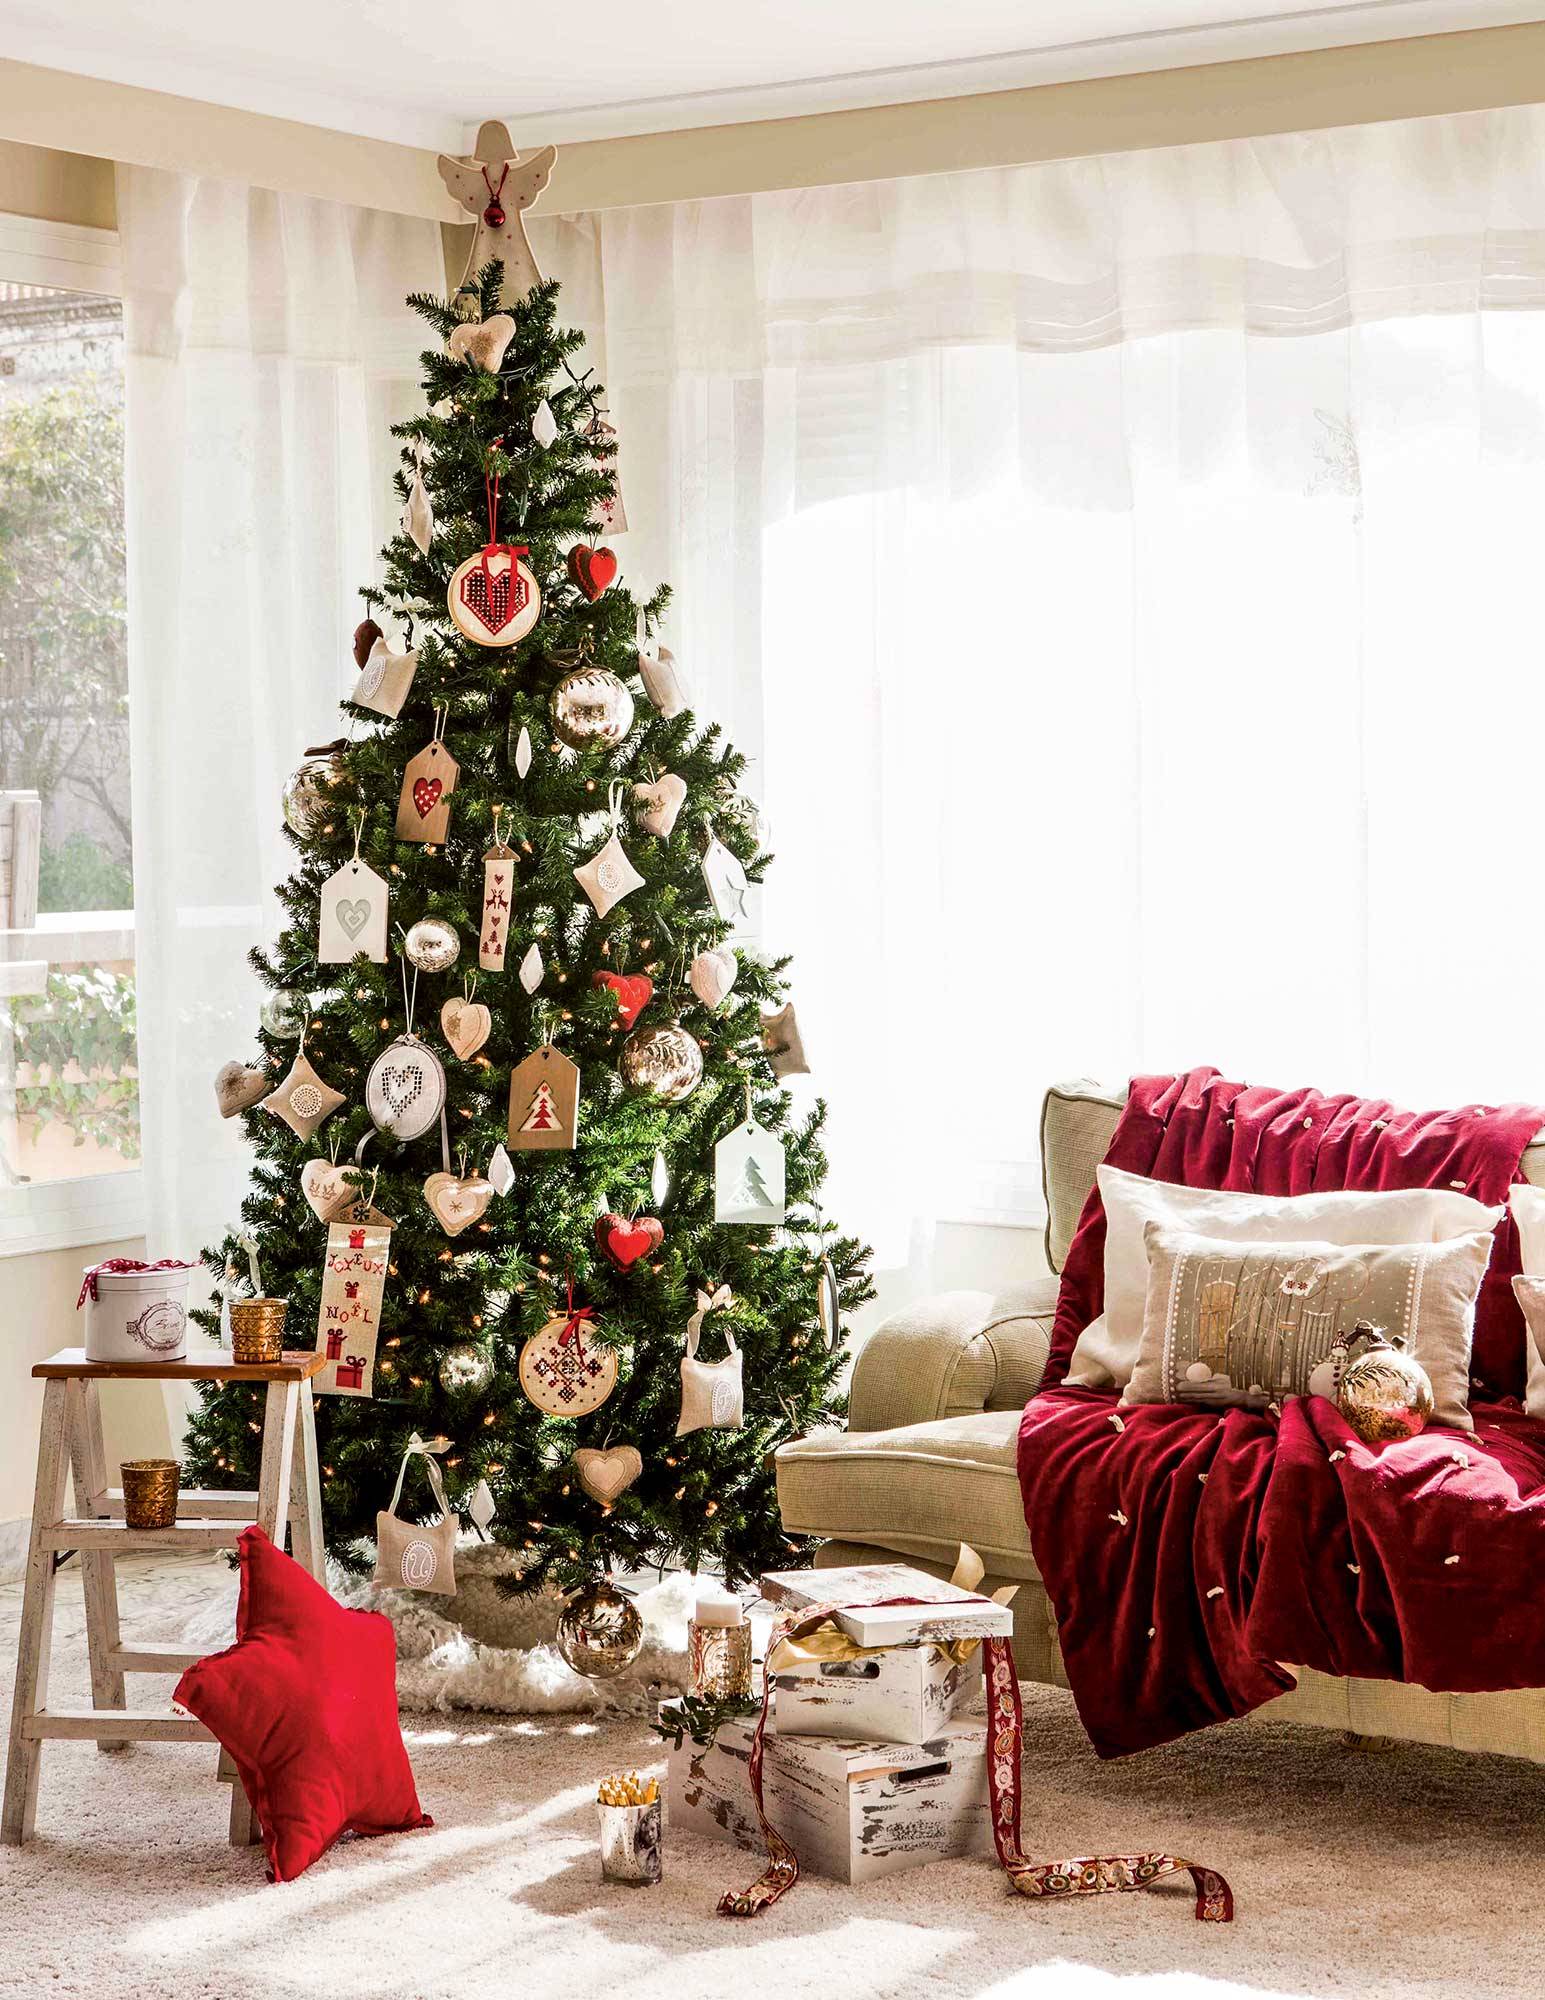 Salón navideño con árbol de Navidad decorado con adornos con motivos bordados.  